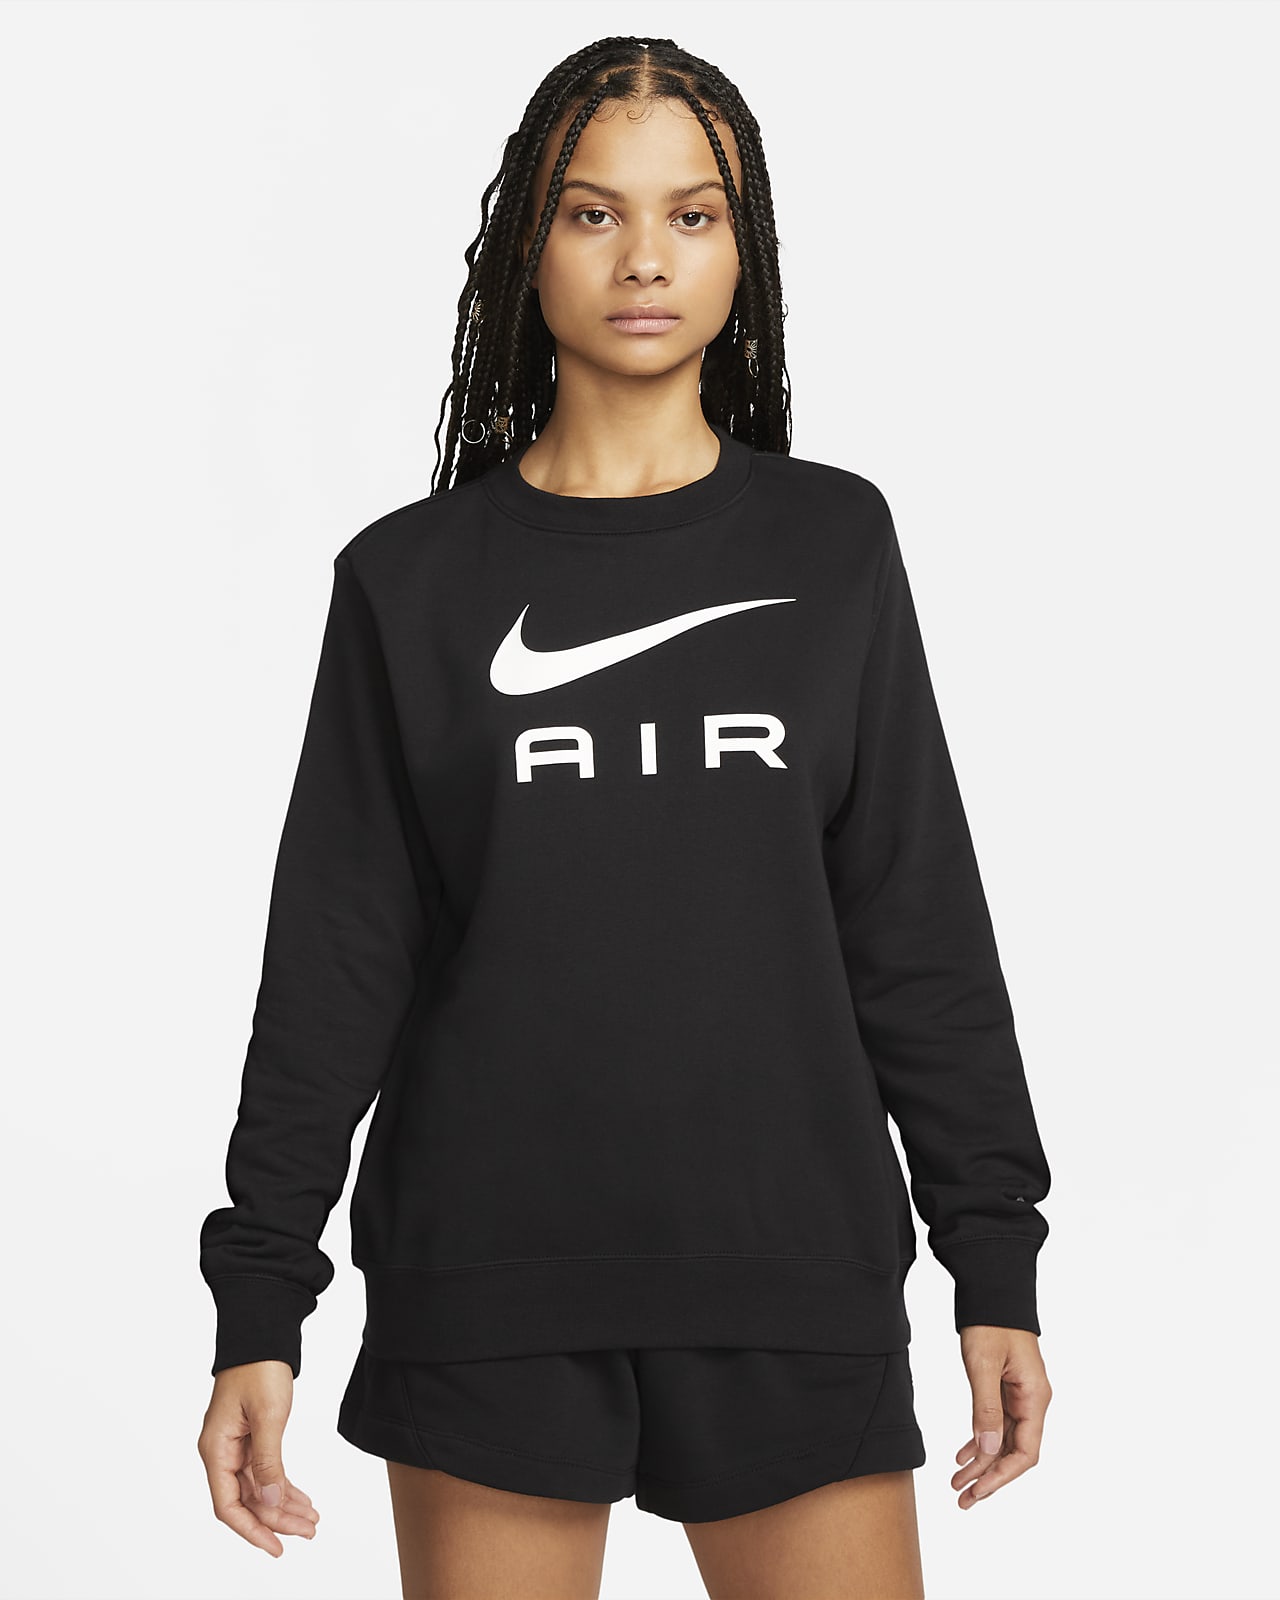 Sweat ras-du-cou en Fleece Nike pour Nike FR